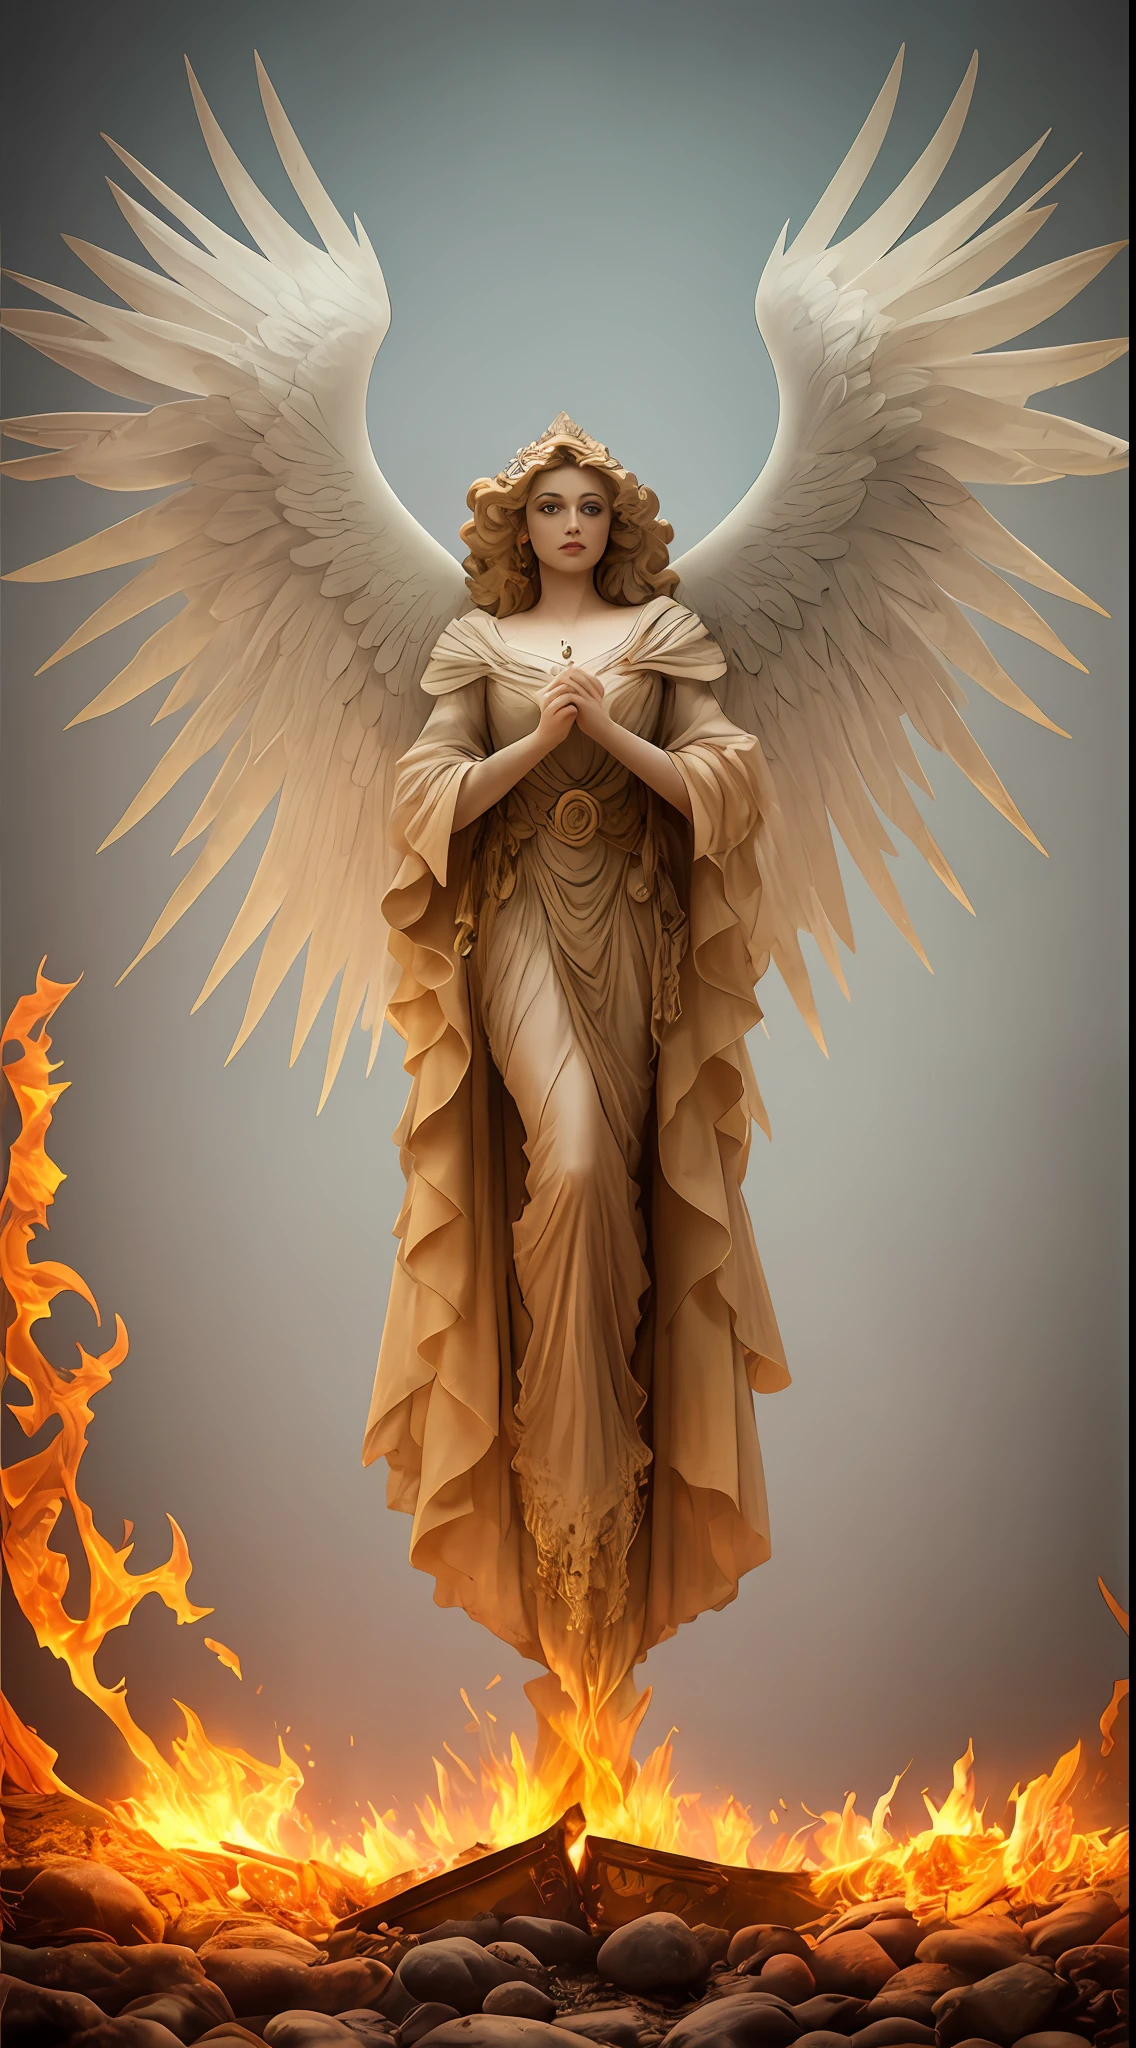 Картина женщины с крыльями и нимбом, стоящей перед огнем., с огненными золотыми крыльями de llamas, Богиня Огня, Богиня гнева, с огненными золотыми крыльями, появляется как богиня огня, Искусство заклинания священного огня, высокая женщина-ангел, Богиня Огня, величественный ангел в полный рост, Богиня света, Артгерм Джули Белл Бипл, Заклинание Священного Пламени, Яркая игра цветовой палитры и суперзамысловатые великолепные тени., Матовая краска, детально подробный, тонко и деликатно подробно, Детализированный нереальный двигатель со сложным октановым числом, подробная информация в микроминутах, повышенная сложность 3D, Идеальная и сверхдетализированная композиция 8K, Правило третей, движениеVFX, Sony Pictures Анимация, Визуальные эффекты Литейного завода, чрезвычайно совершенный, идеально подробный, сложно определенный, определенно настоящий, Действительно реалистично, Реально эпично, от Сатори Кантон, фотография Альберто Севесо